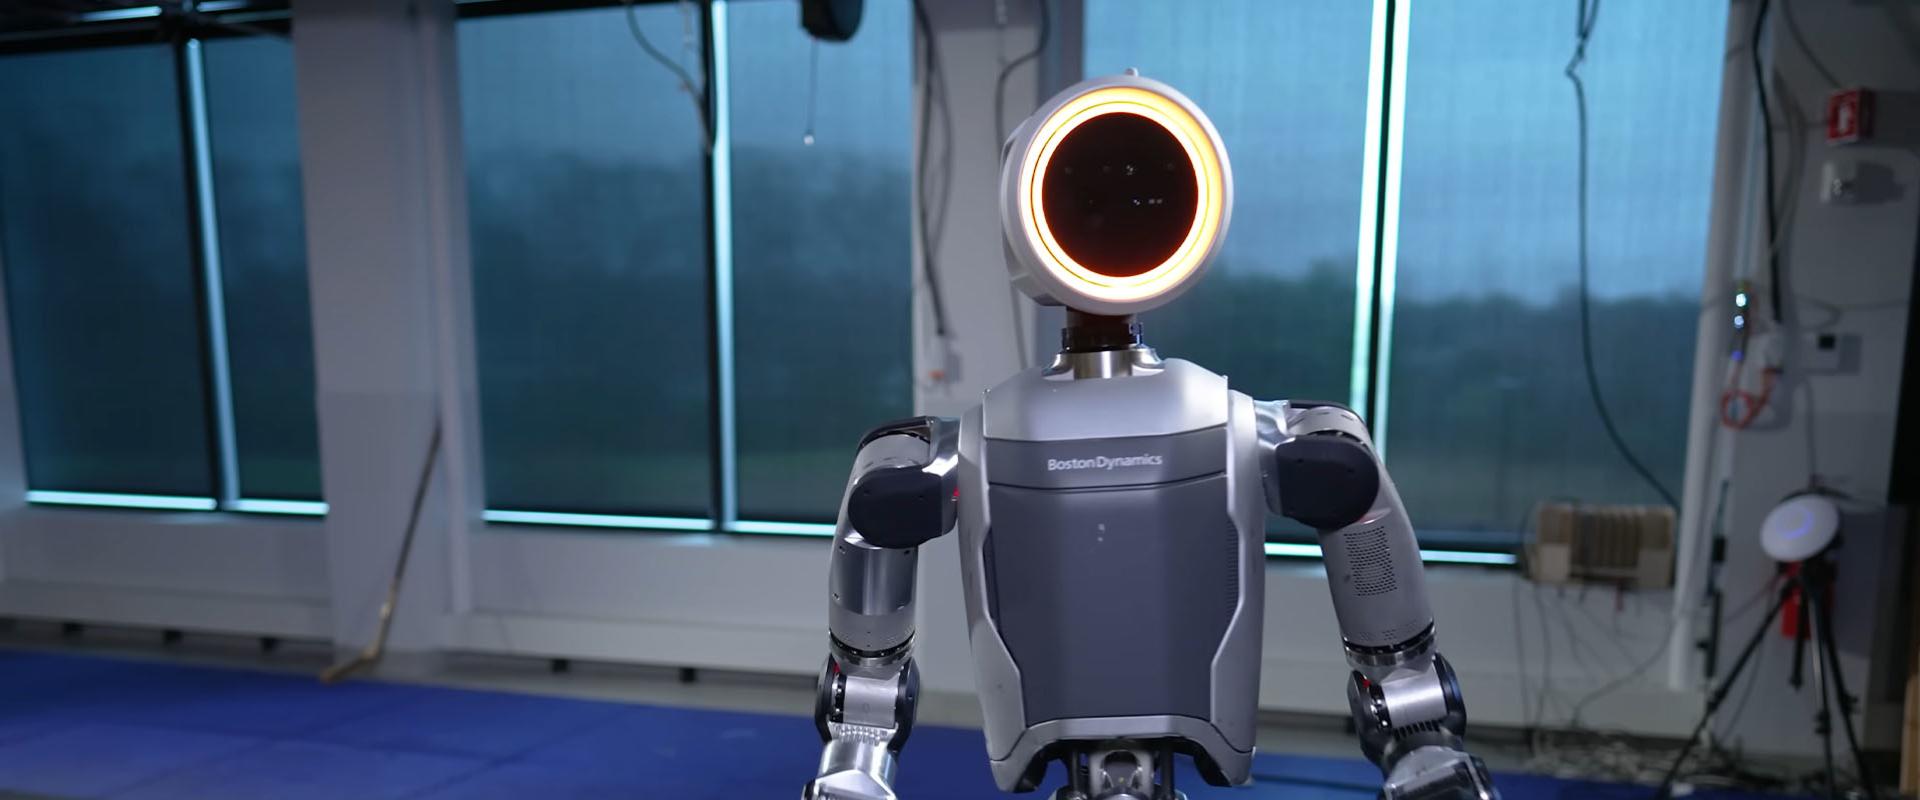 Kigyúrta magát a Pixar-lámpa? Ja nem, ez csak a Boston Dynamics új robotja